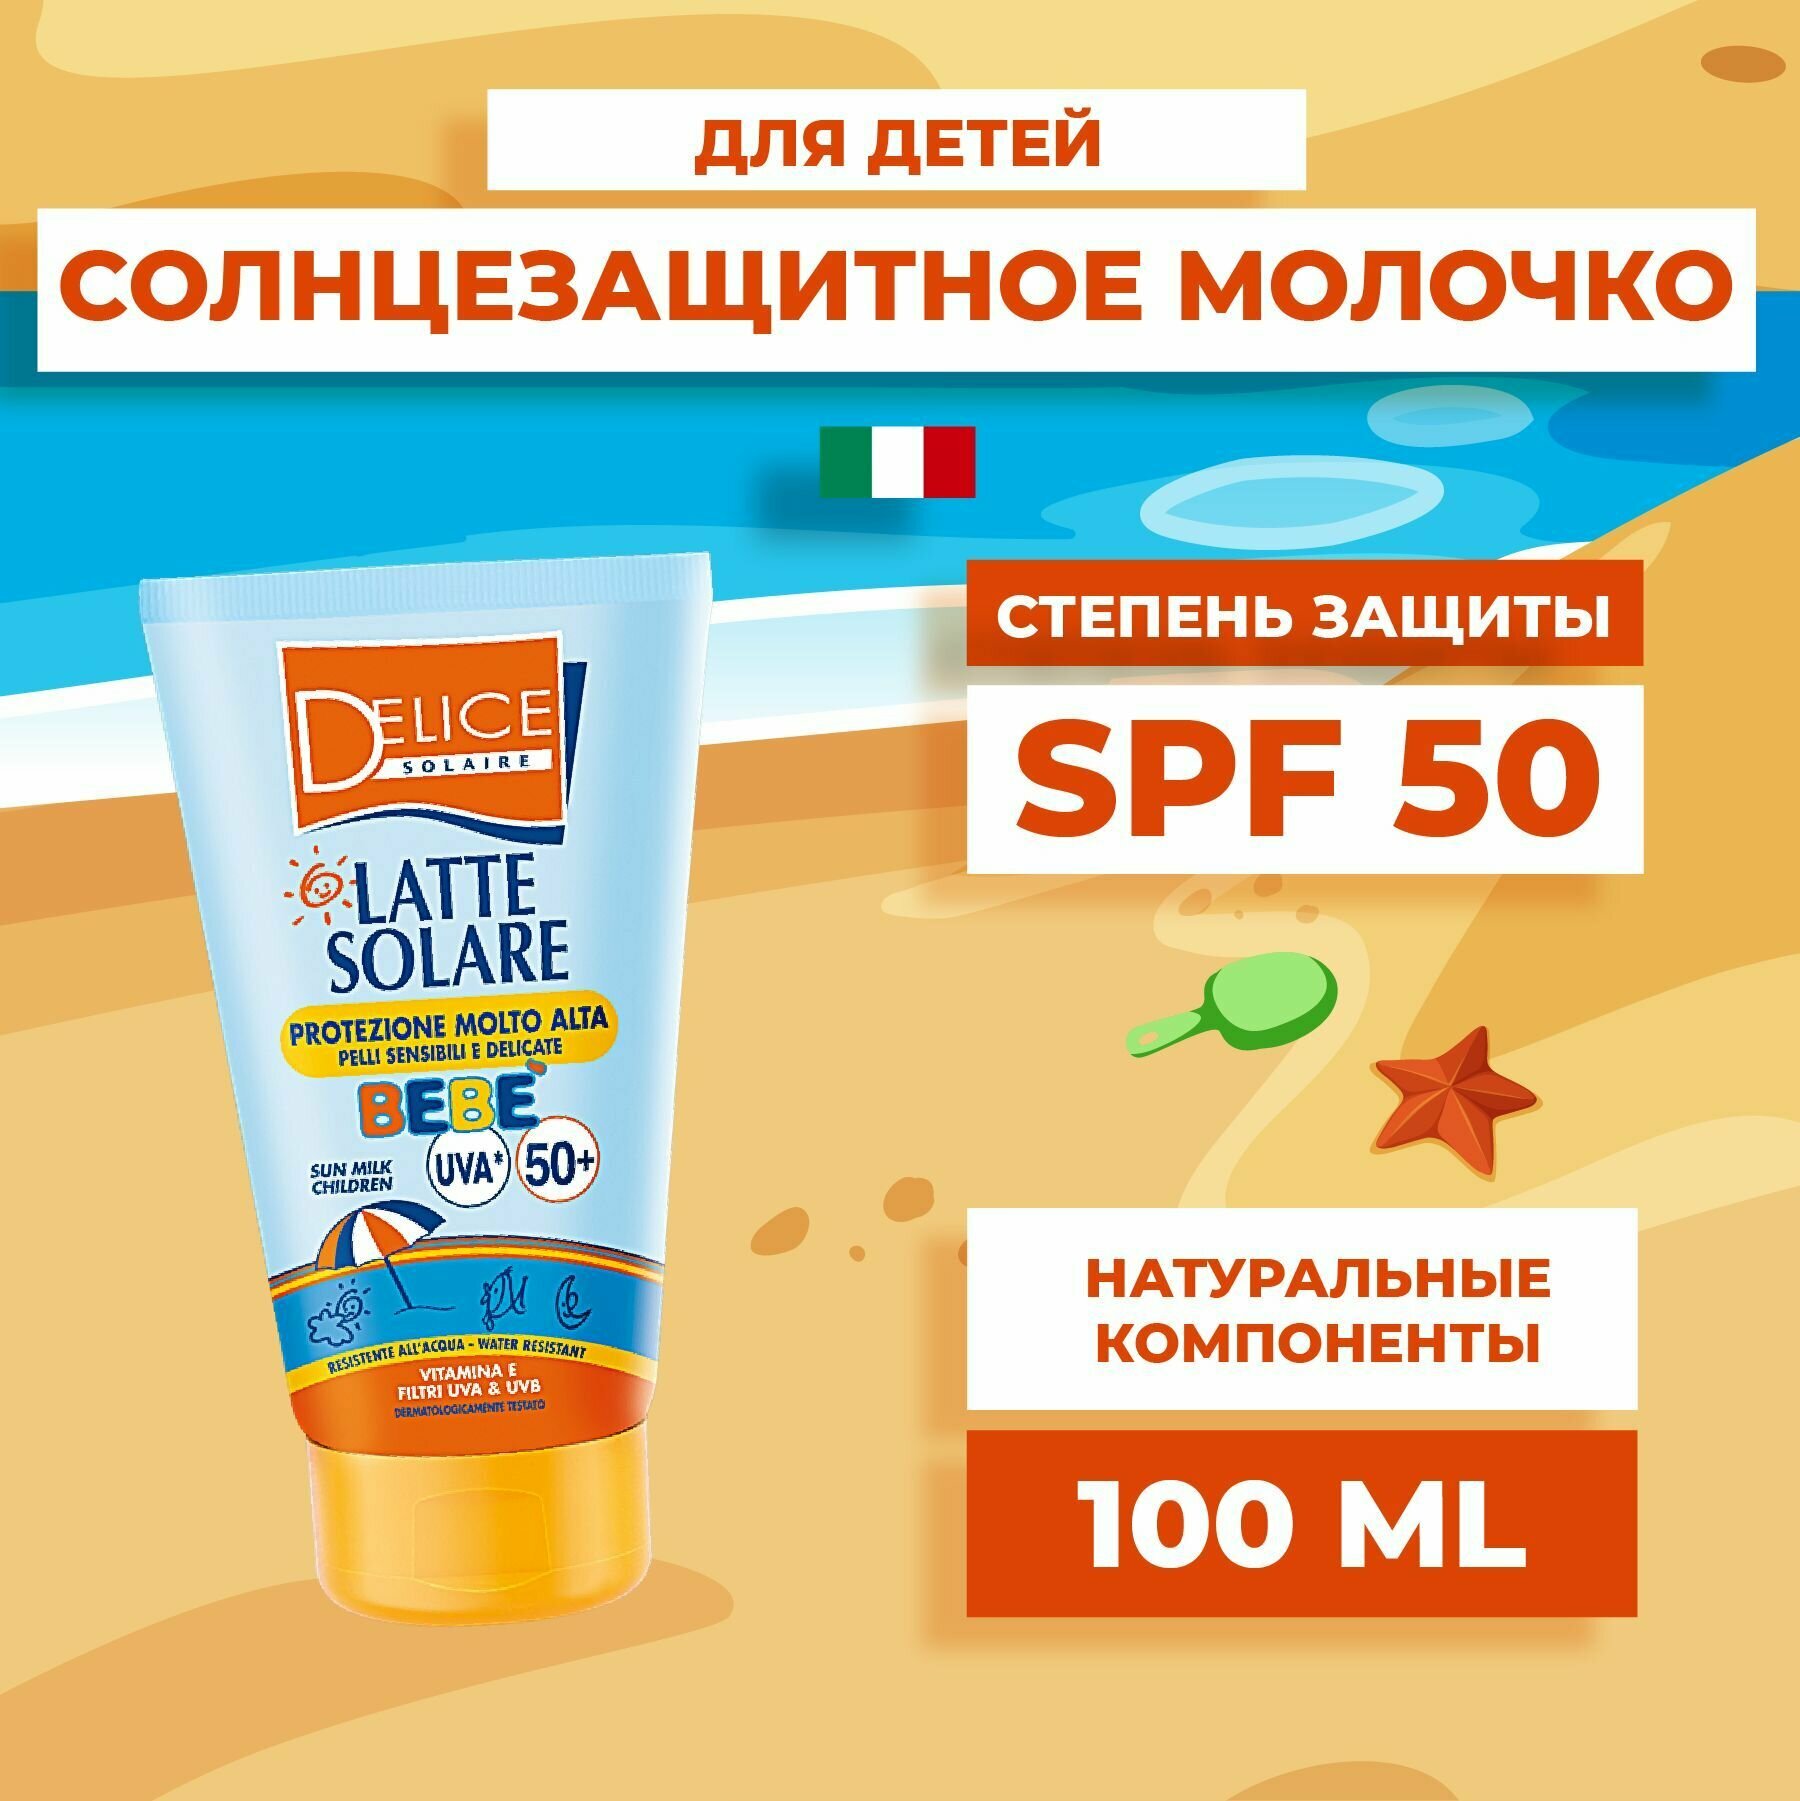 Delice Solaire Солнцезащитное молочко для детей солнцезащитный крем детский SPF 50 100 мл